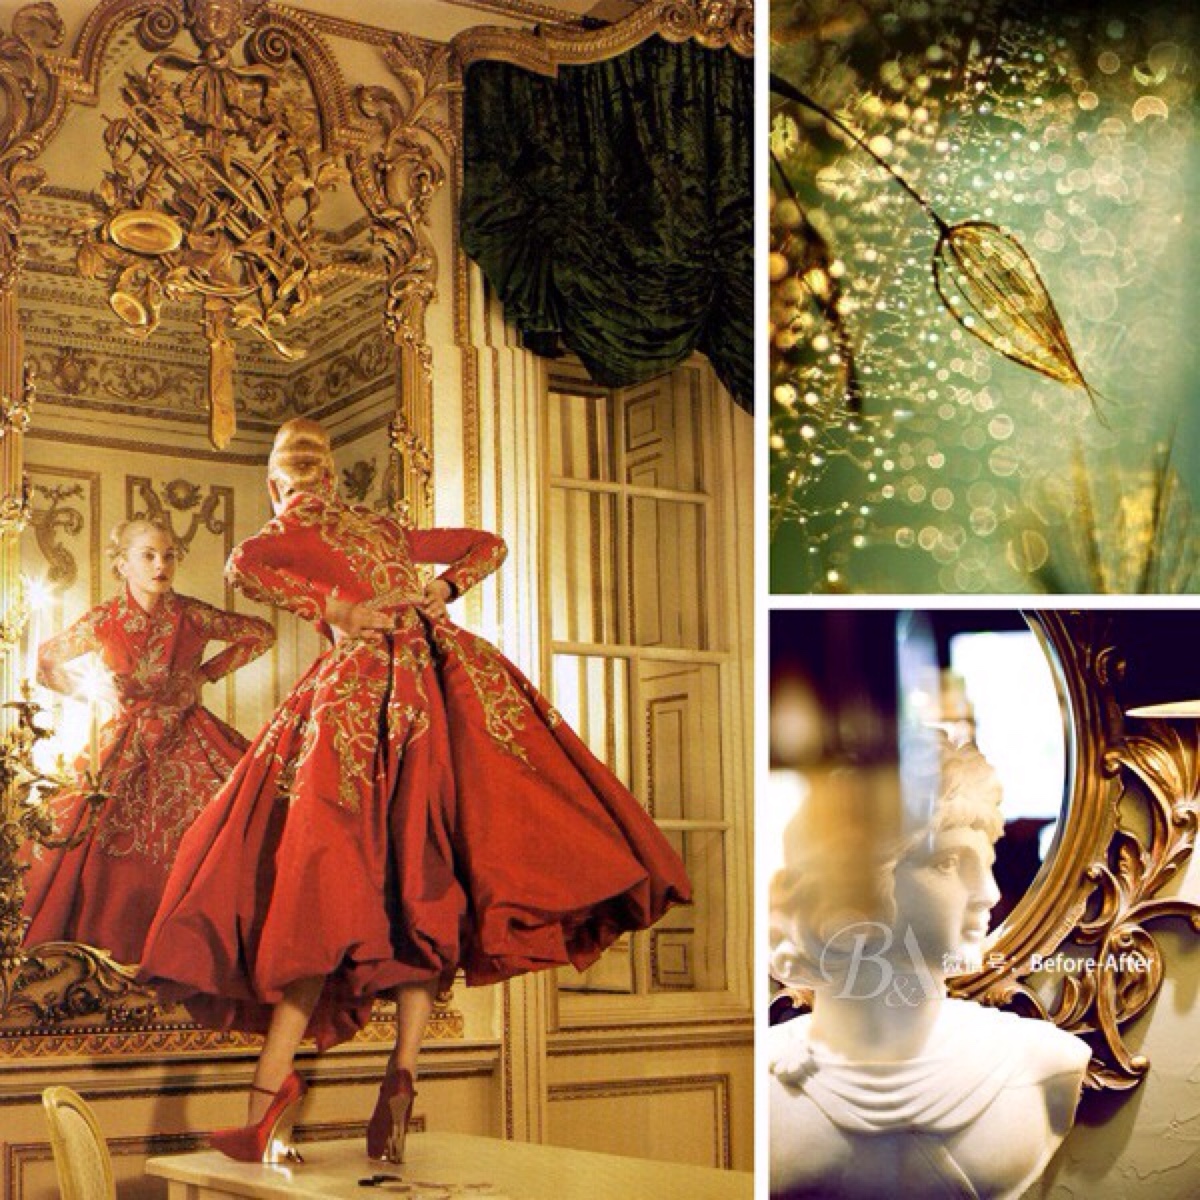 法式宫廷风格带有与生俱来的贵族宫廷色彩,奢华的金色,浓郁的油画